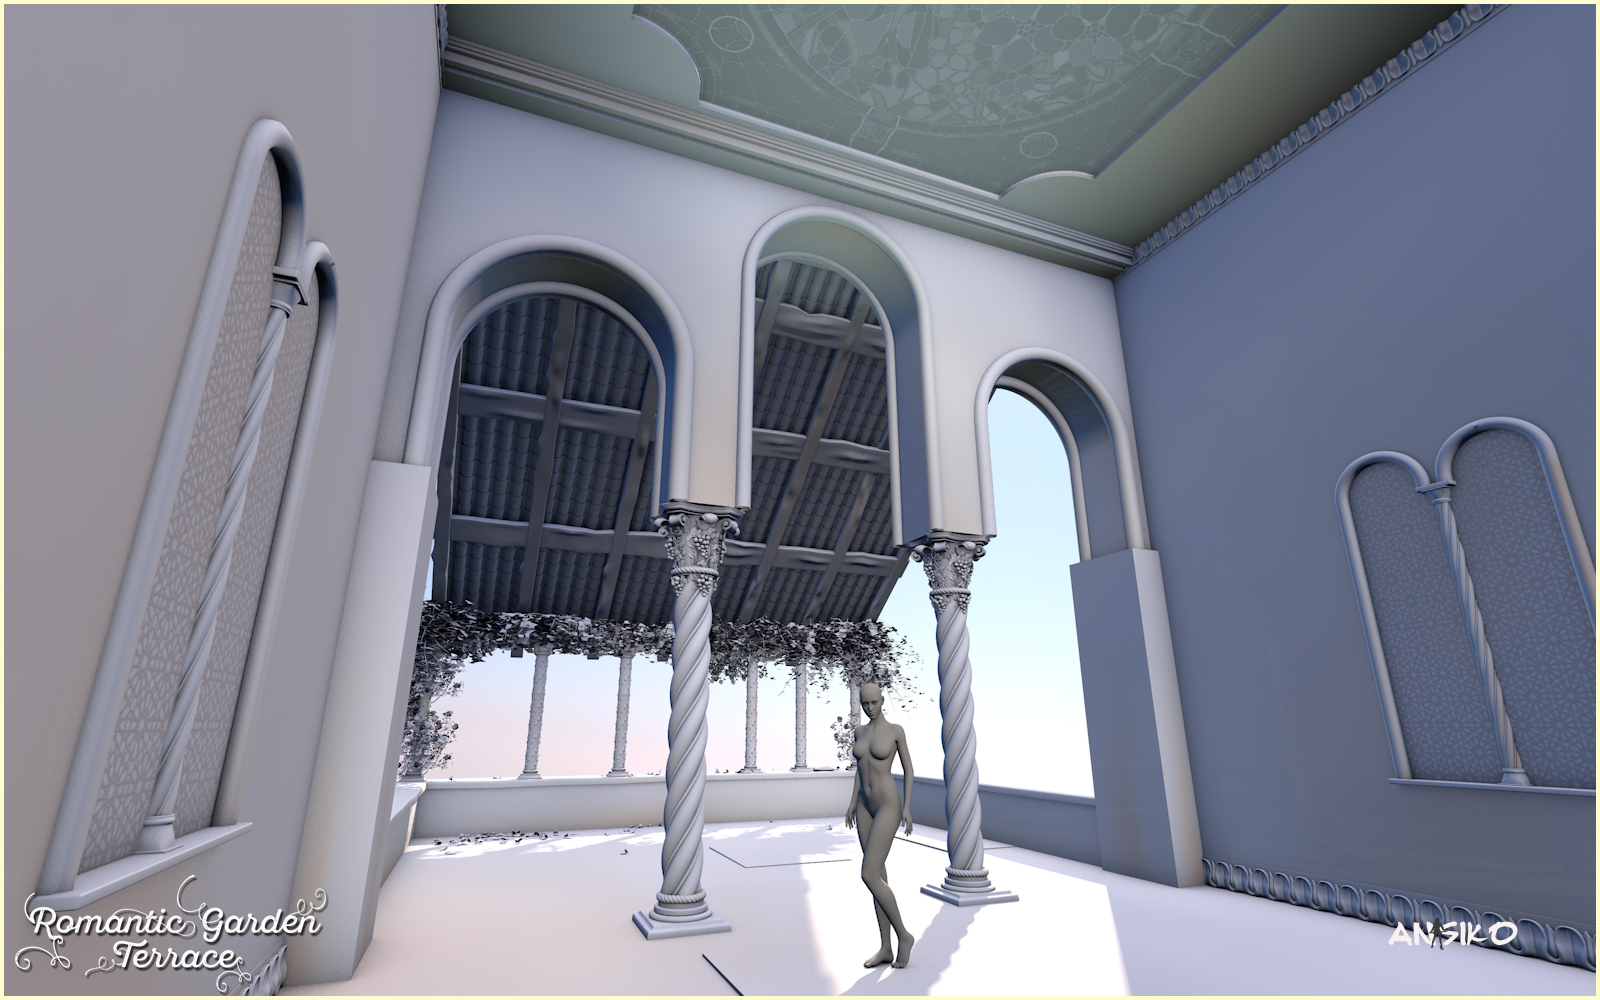 Romantic Garden Terrace by: Ansiko, 3D Models by Daz 3D